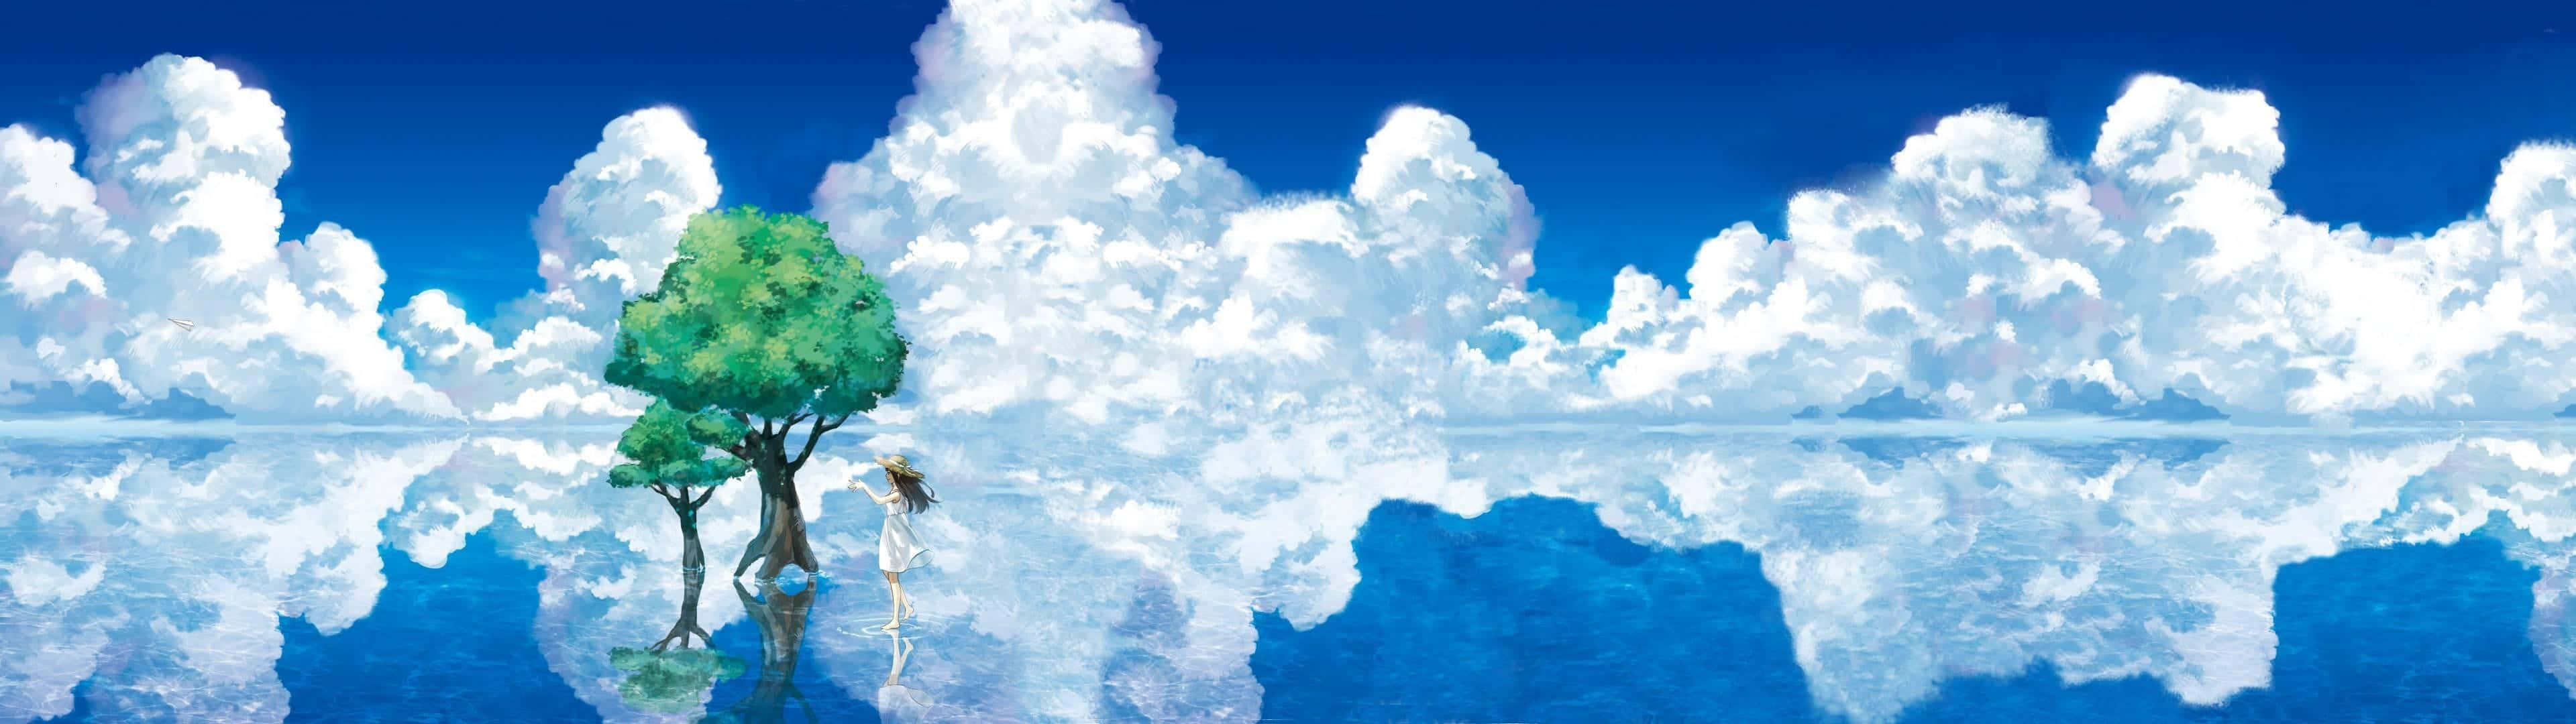 Genießensie Diese Wunderschönen Anime-hd-wallpaper Mit Einer Auflösung Von 3840 X 1080. Wallpaper